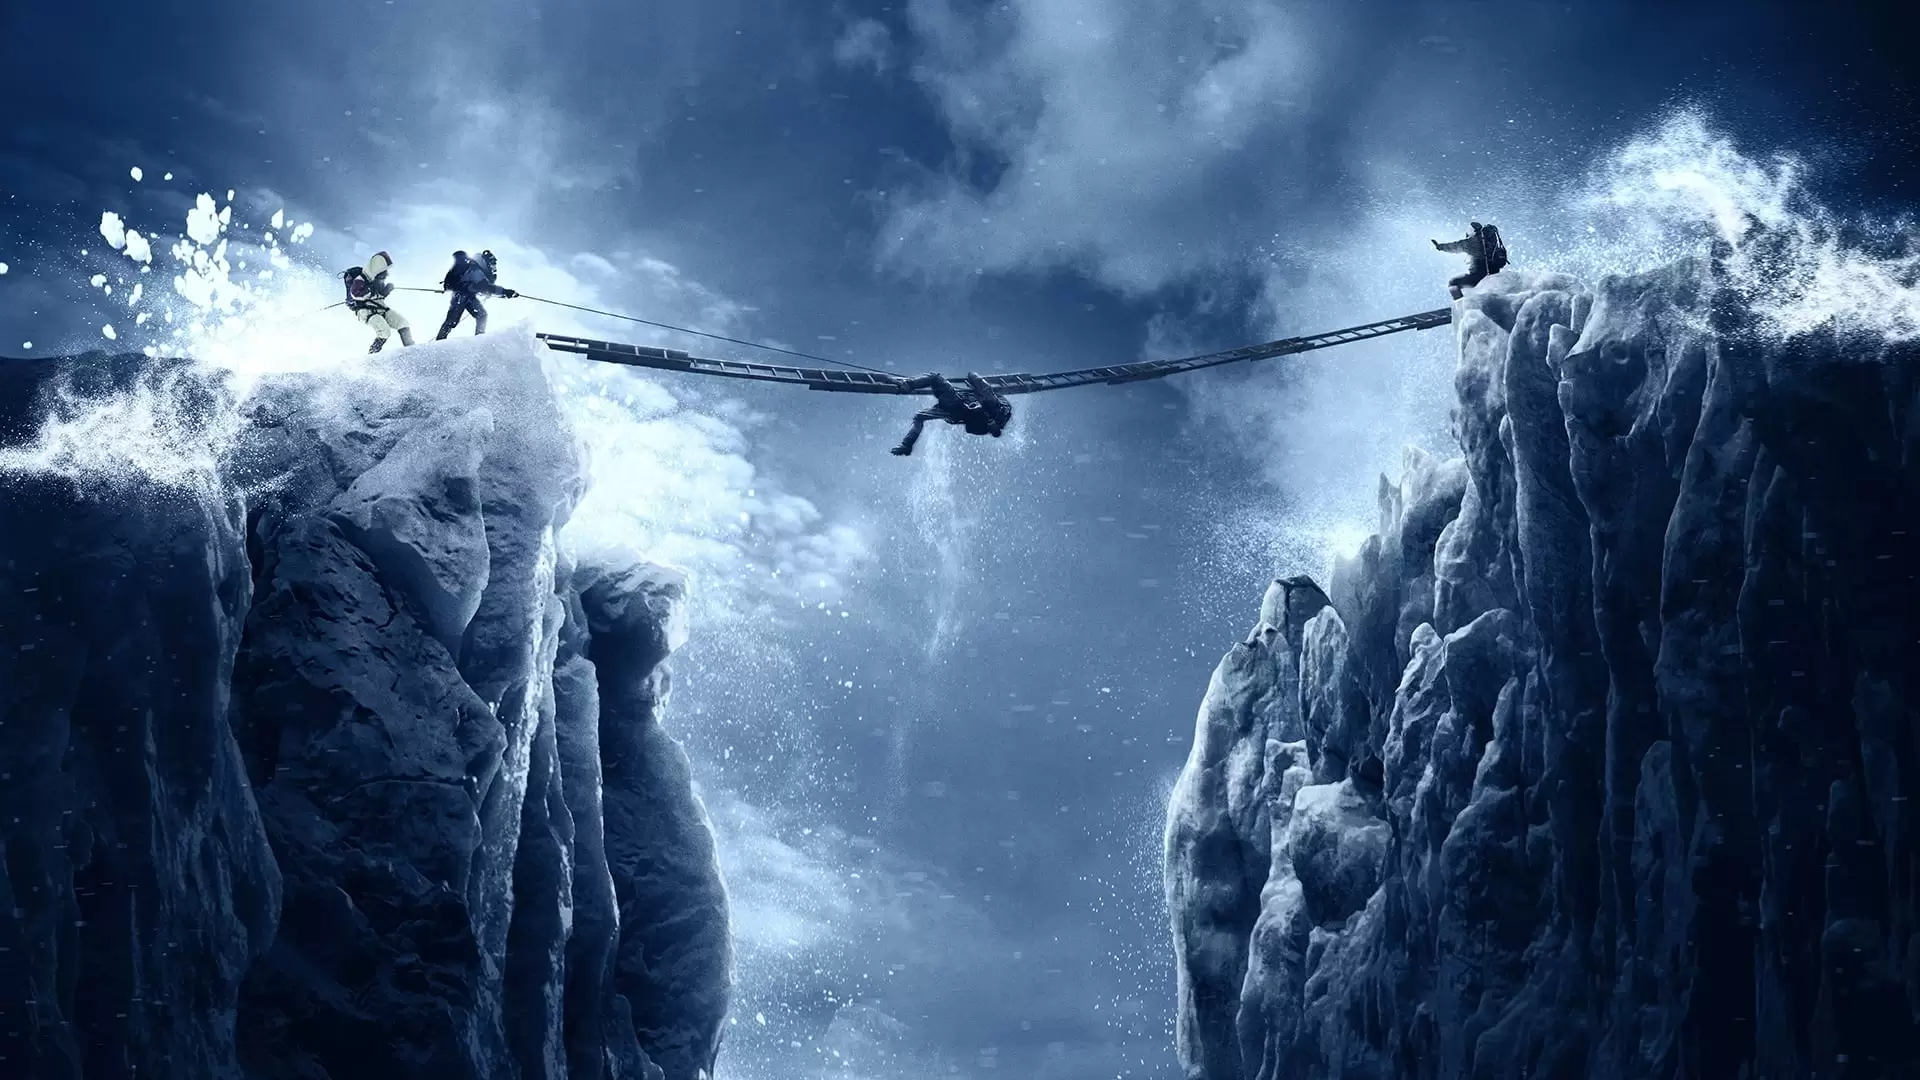 دانلود فیلم Everest 2015 (اورست) با زیرنویس فارسی و تماشای آنلاین